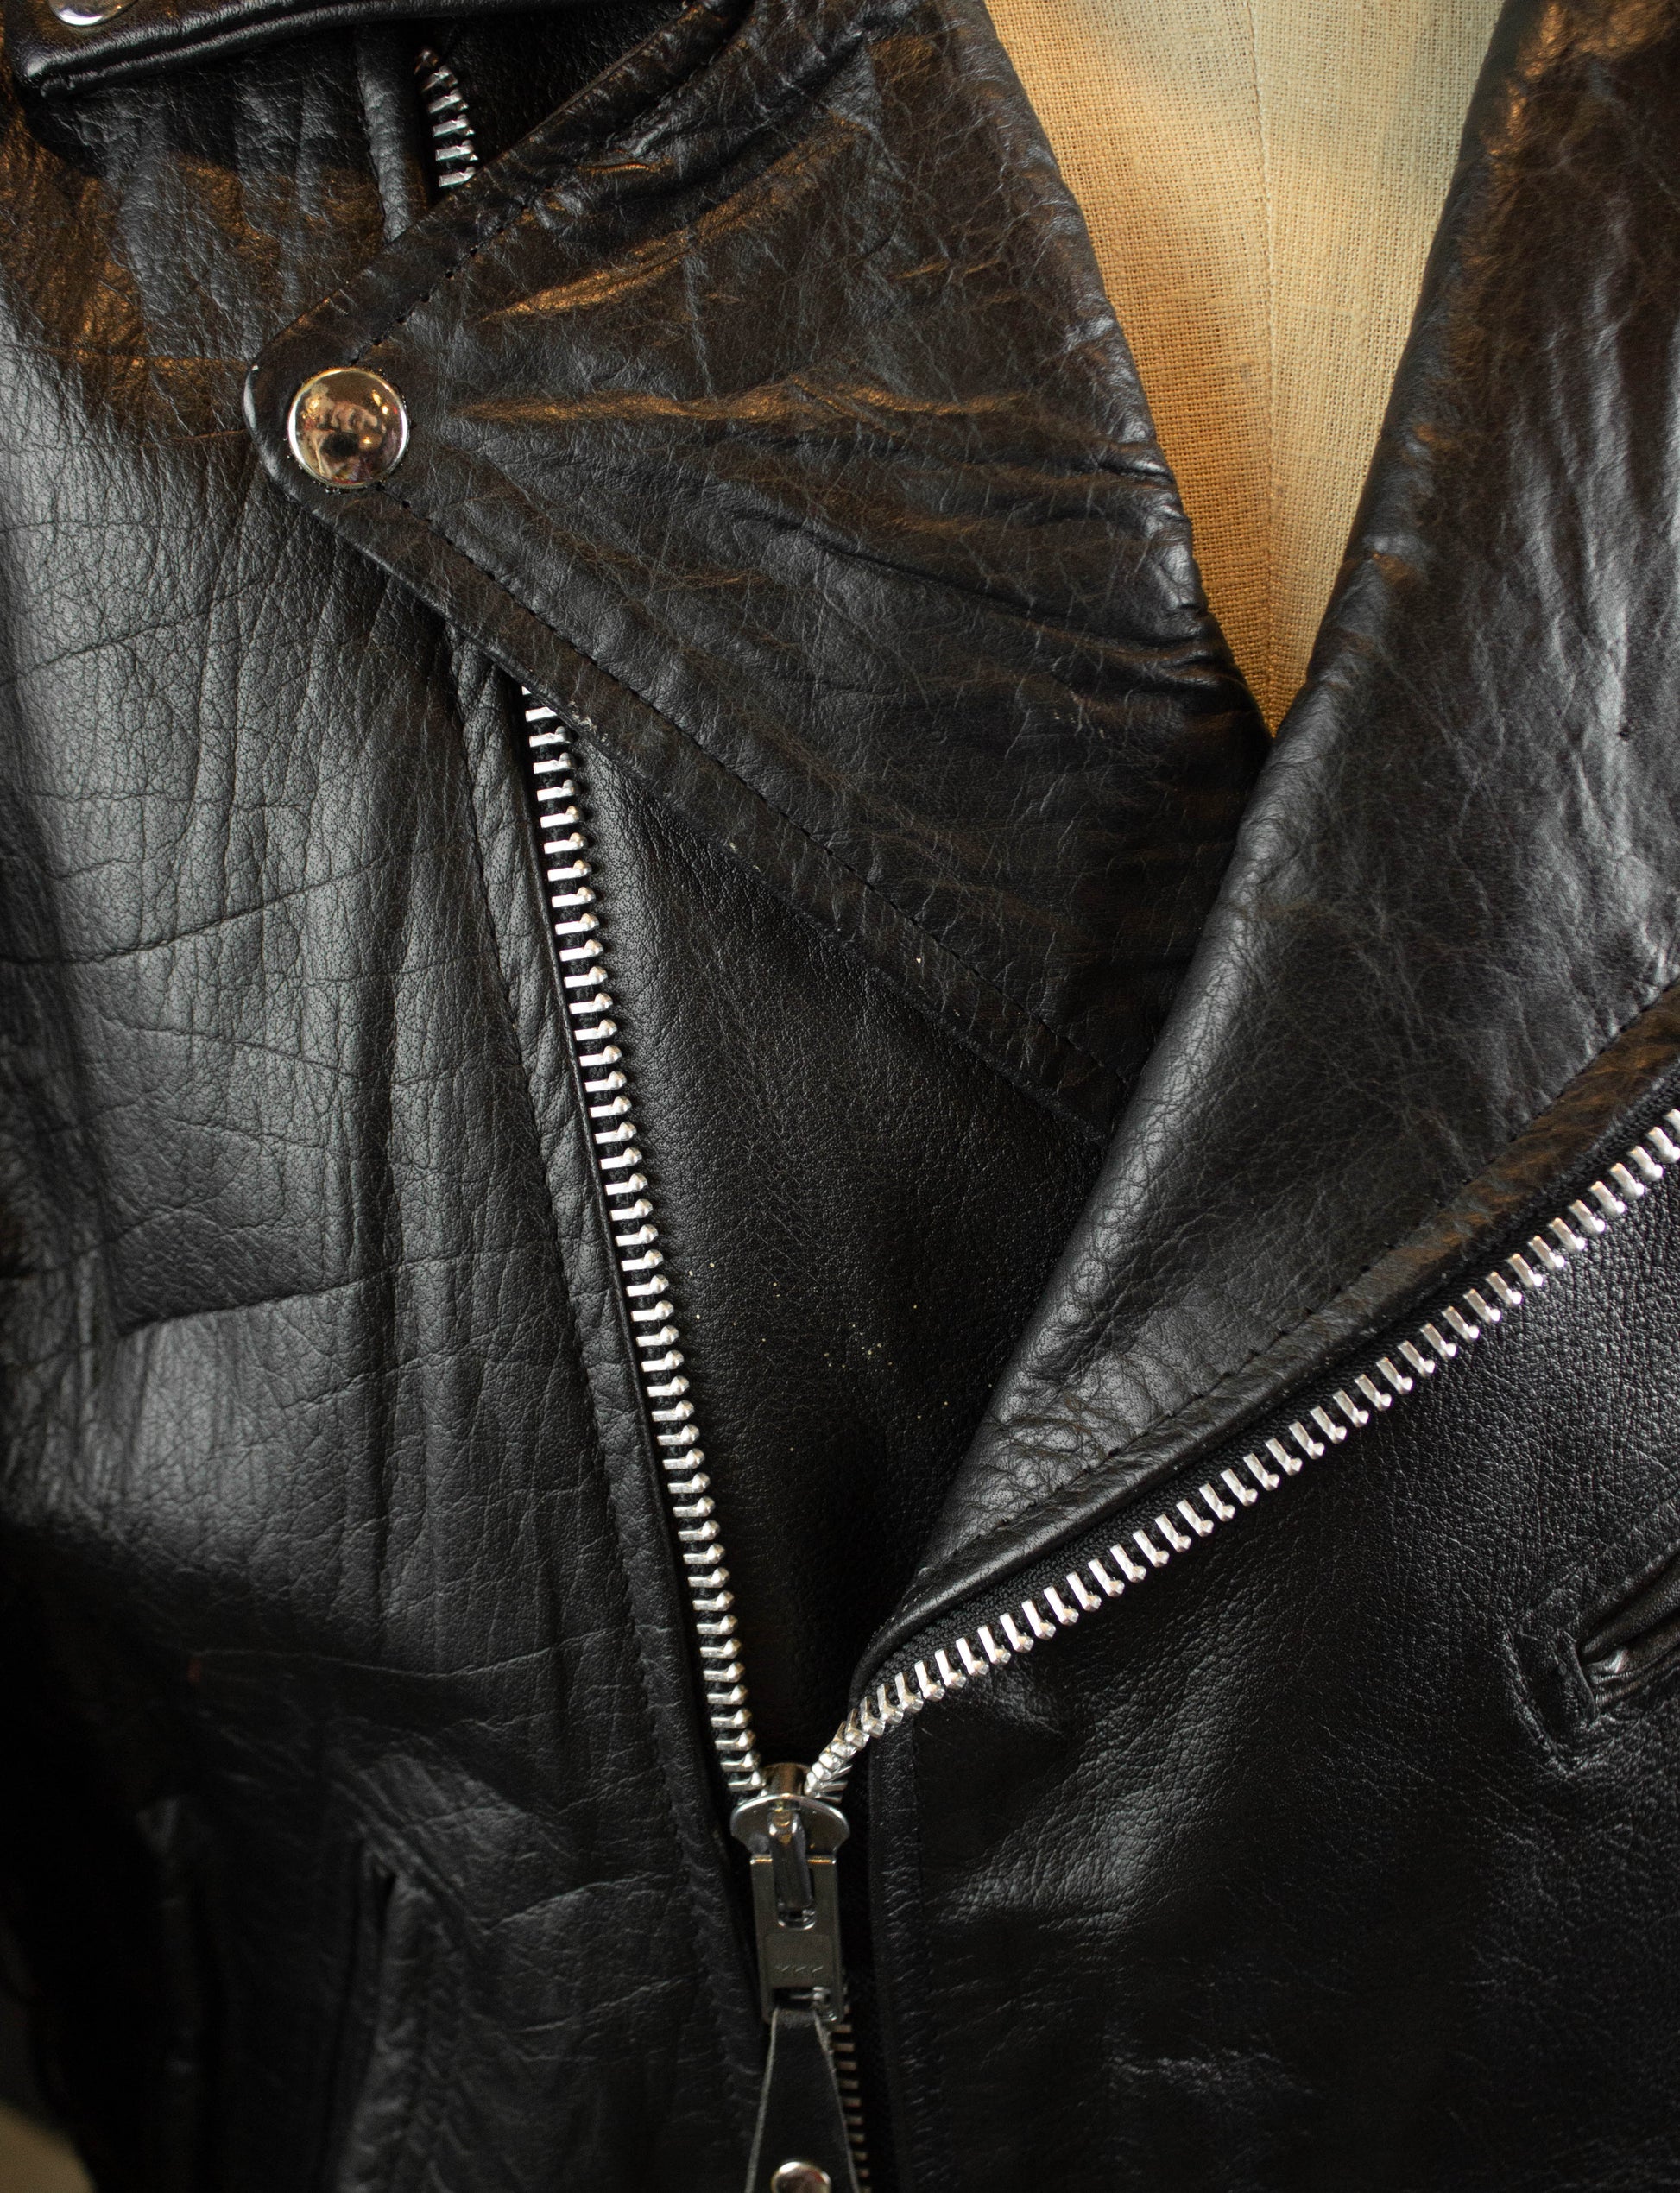 Vintage Harley Davidson Leather Biker Hat with Pins 70s/80s Black – Black  Shag Vintage